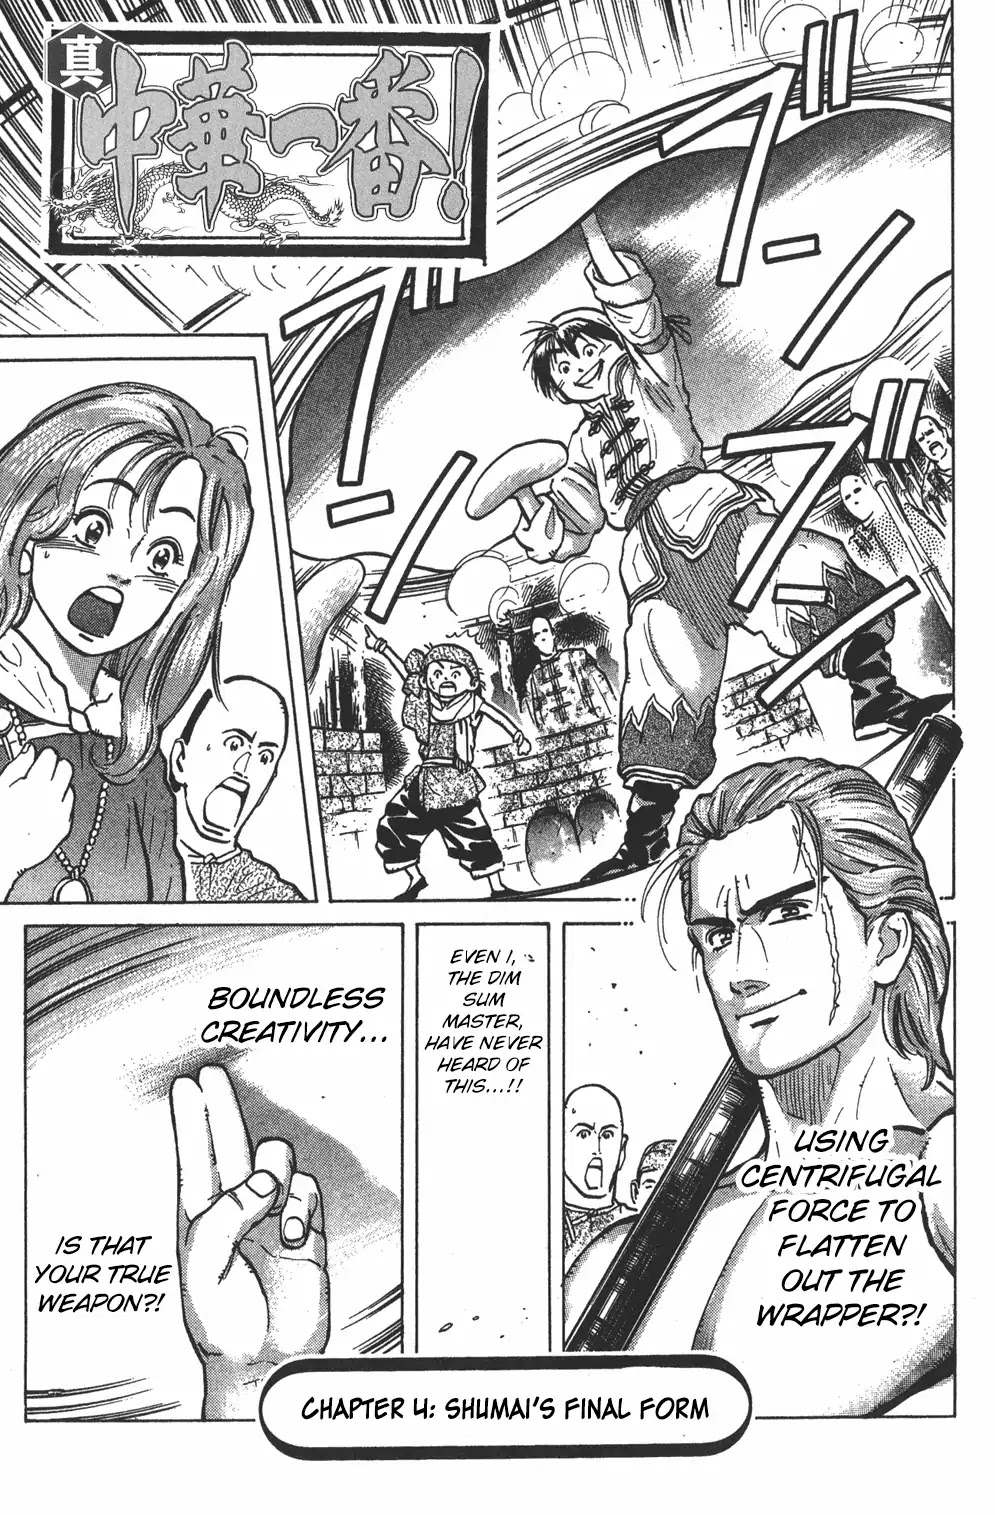 Shin Chuuka Ichiban! - Page 1